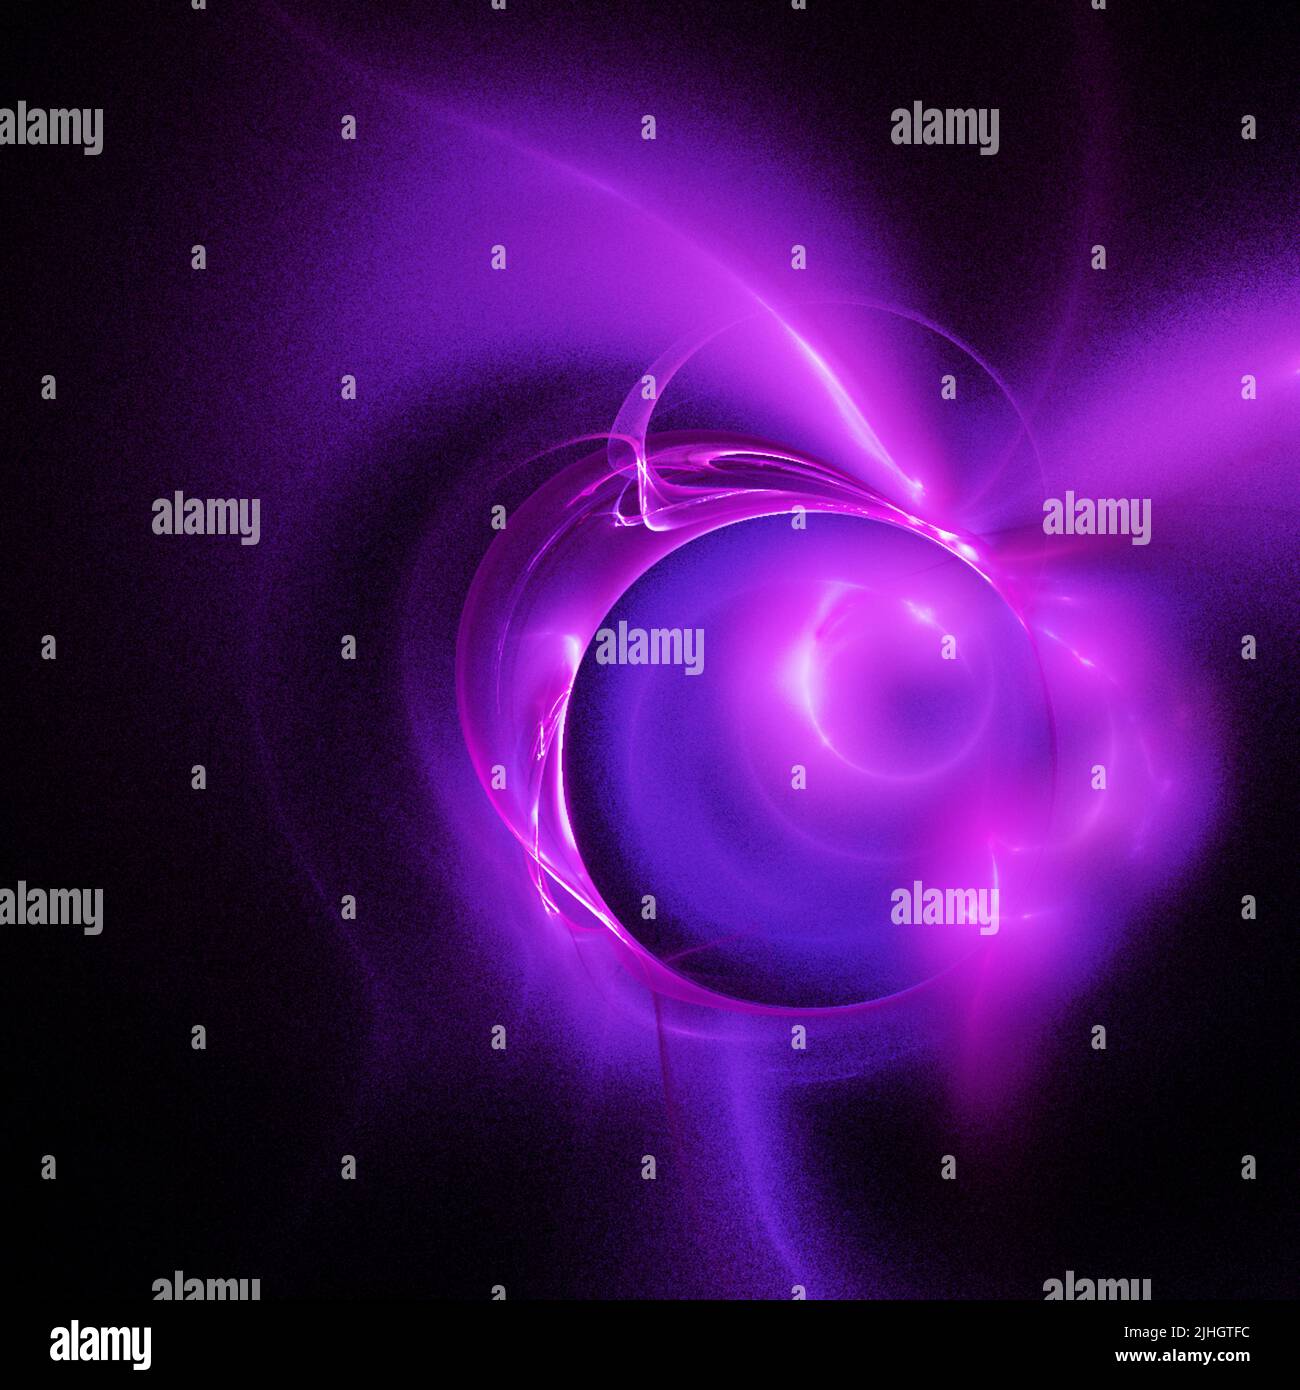 Fantastische Illustration eines violetten Weltraumplaneten, Sternensystem, Farbgrafiken, Design, Hintergrund Stockfoto